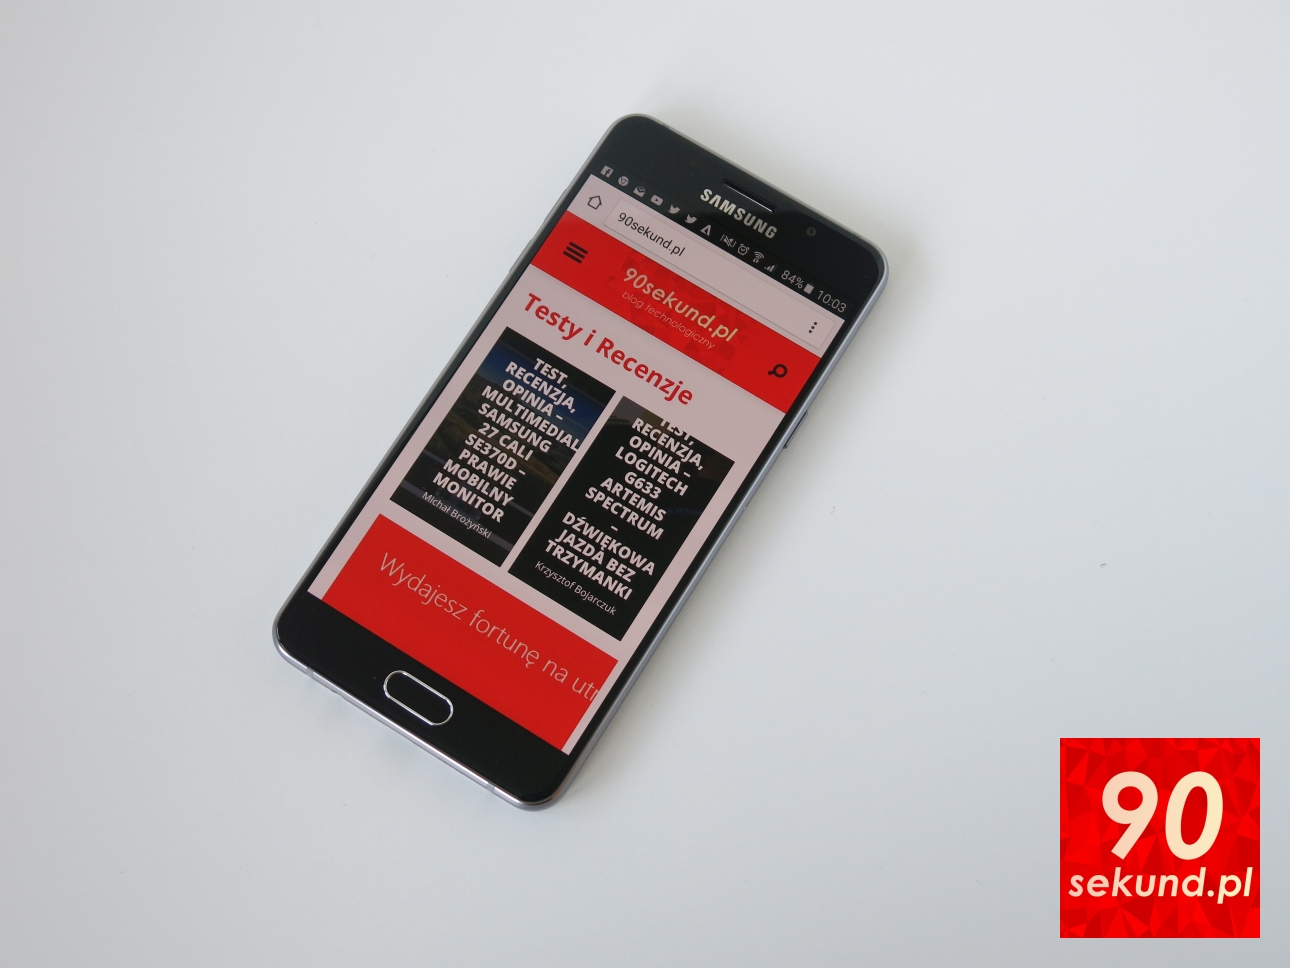 Samsung Galaxy A5 2016 (SM-A510F) - 90sekund.pl